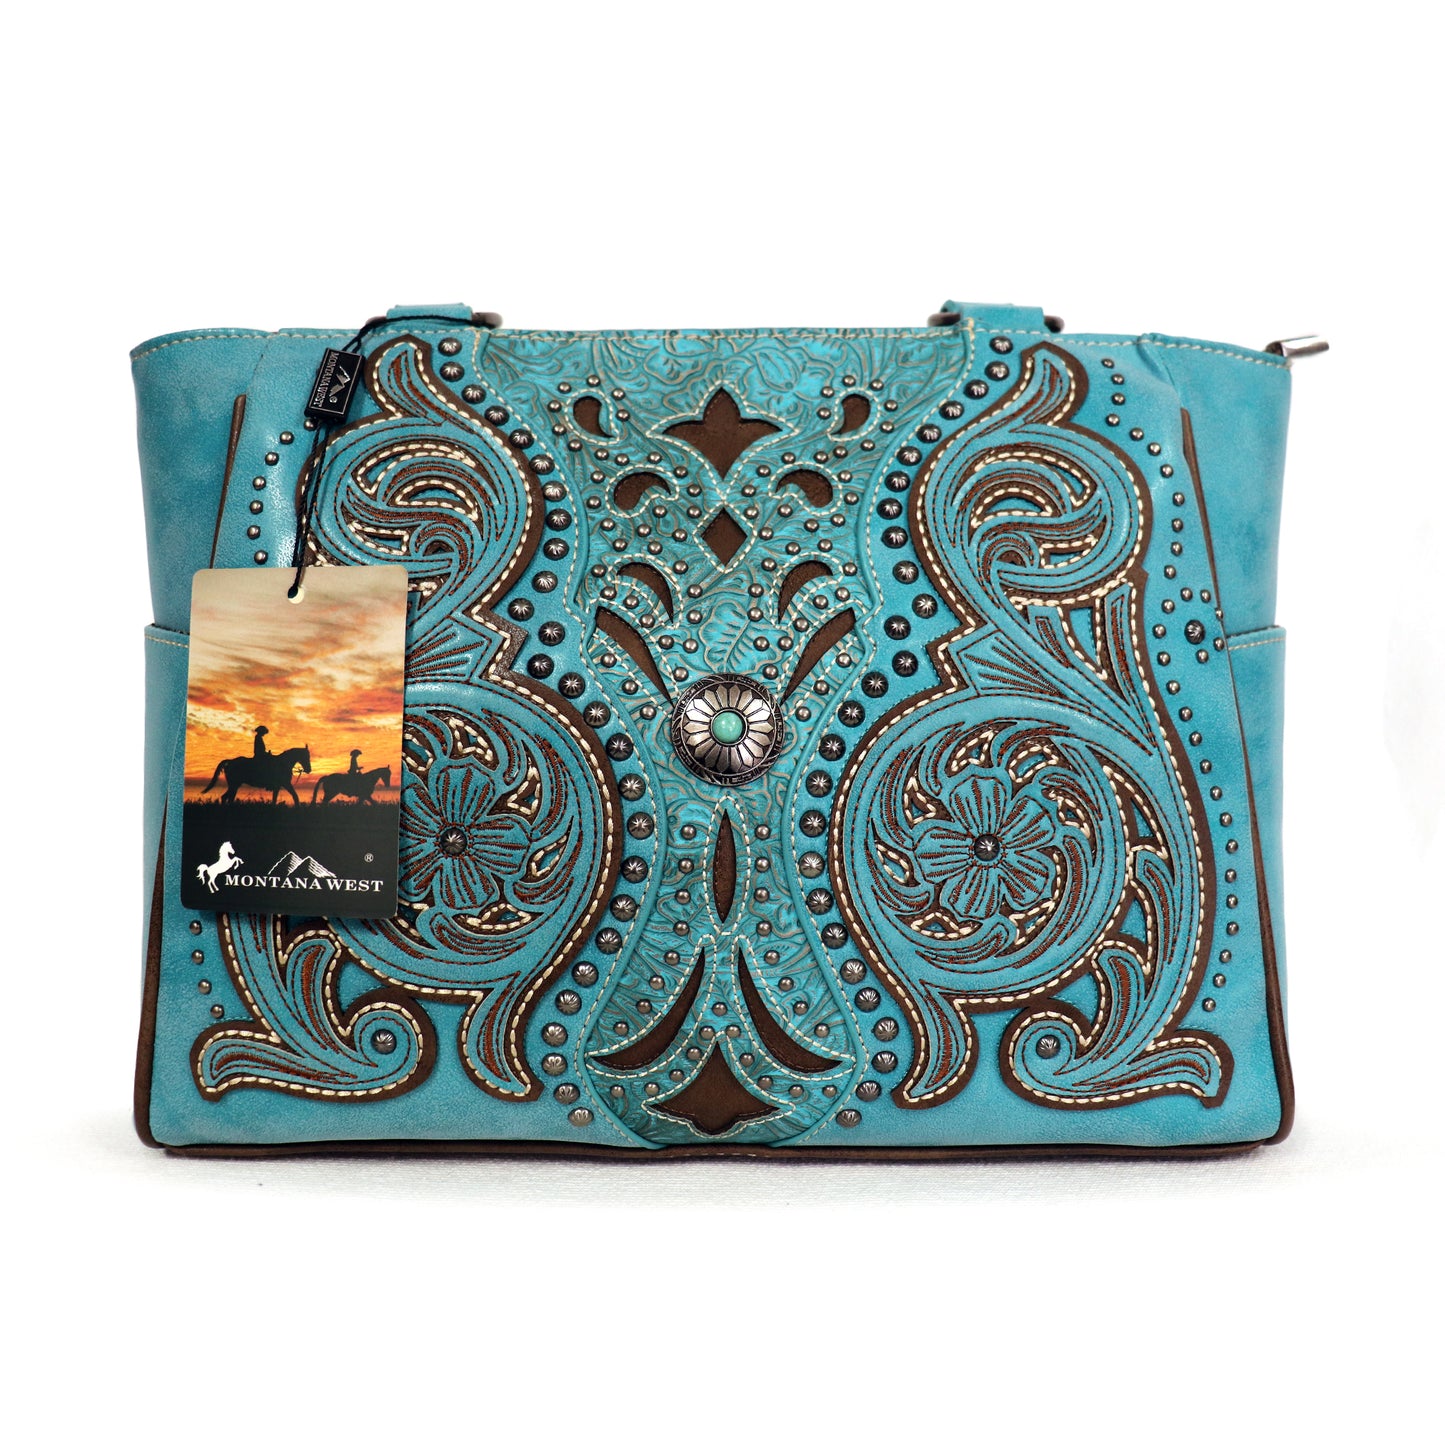 Montana West - Teal Embroidered Handbag